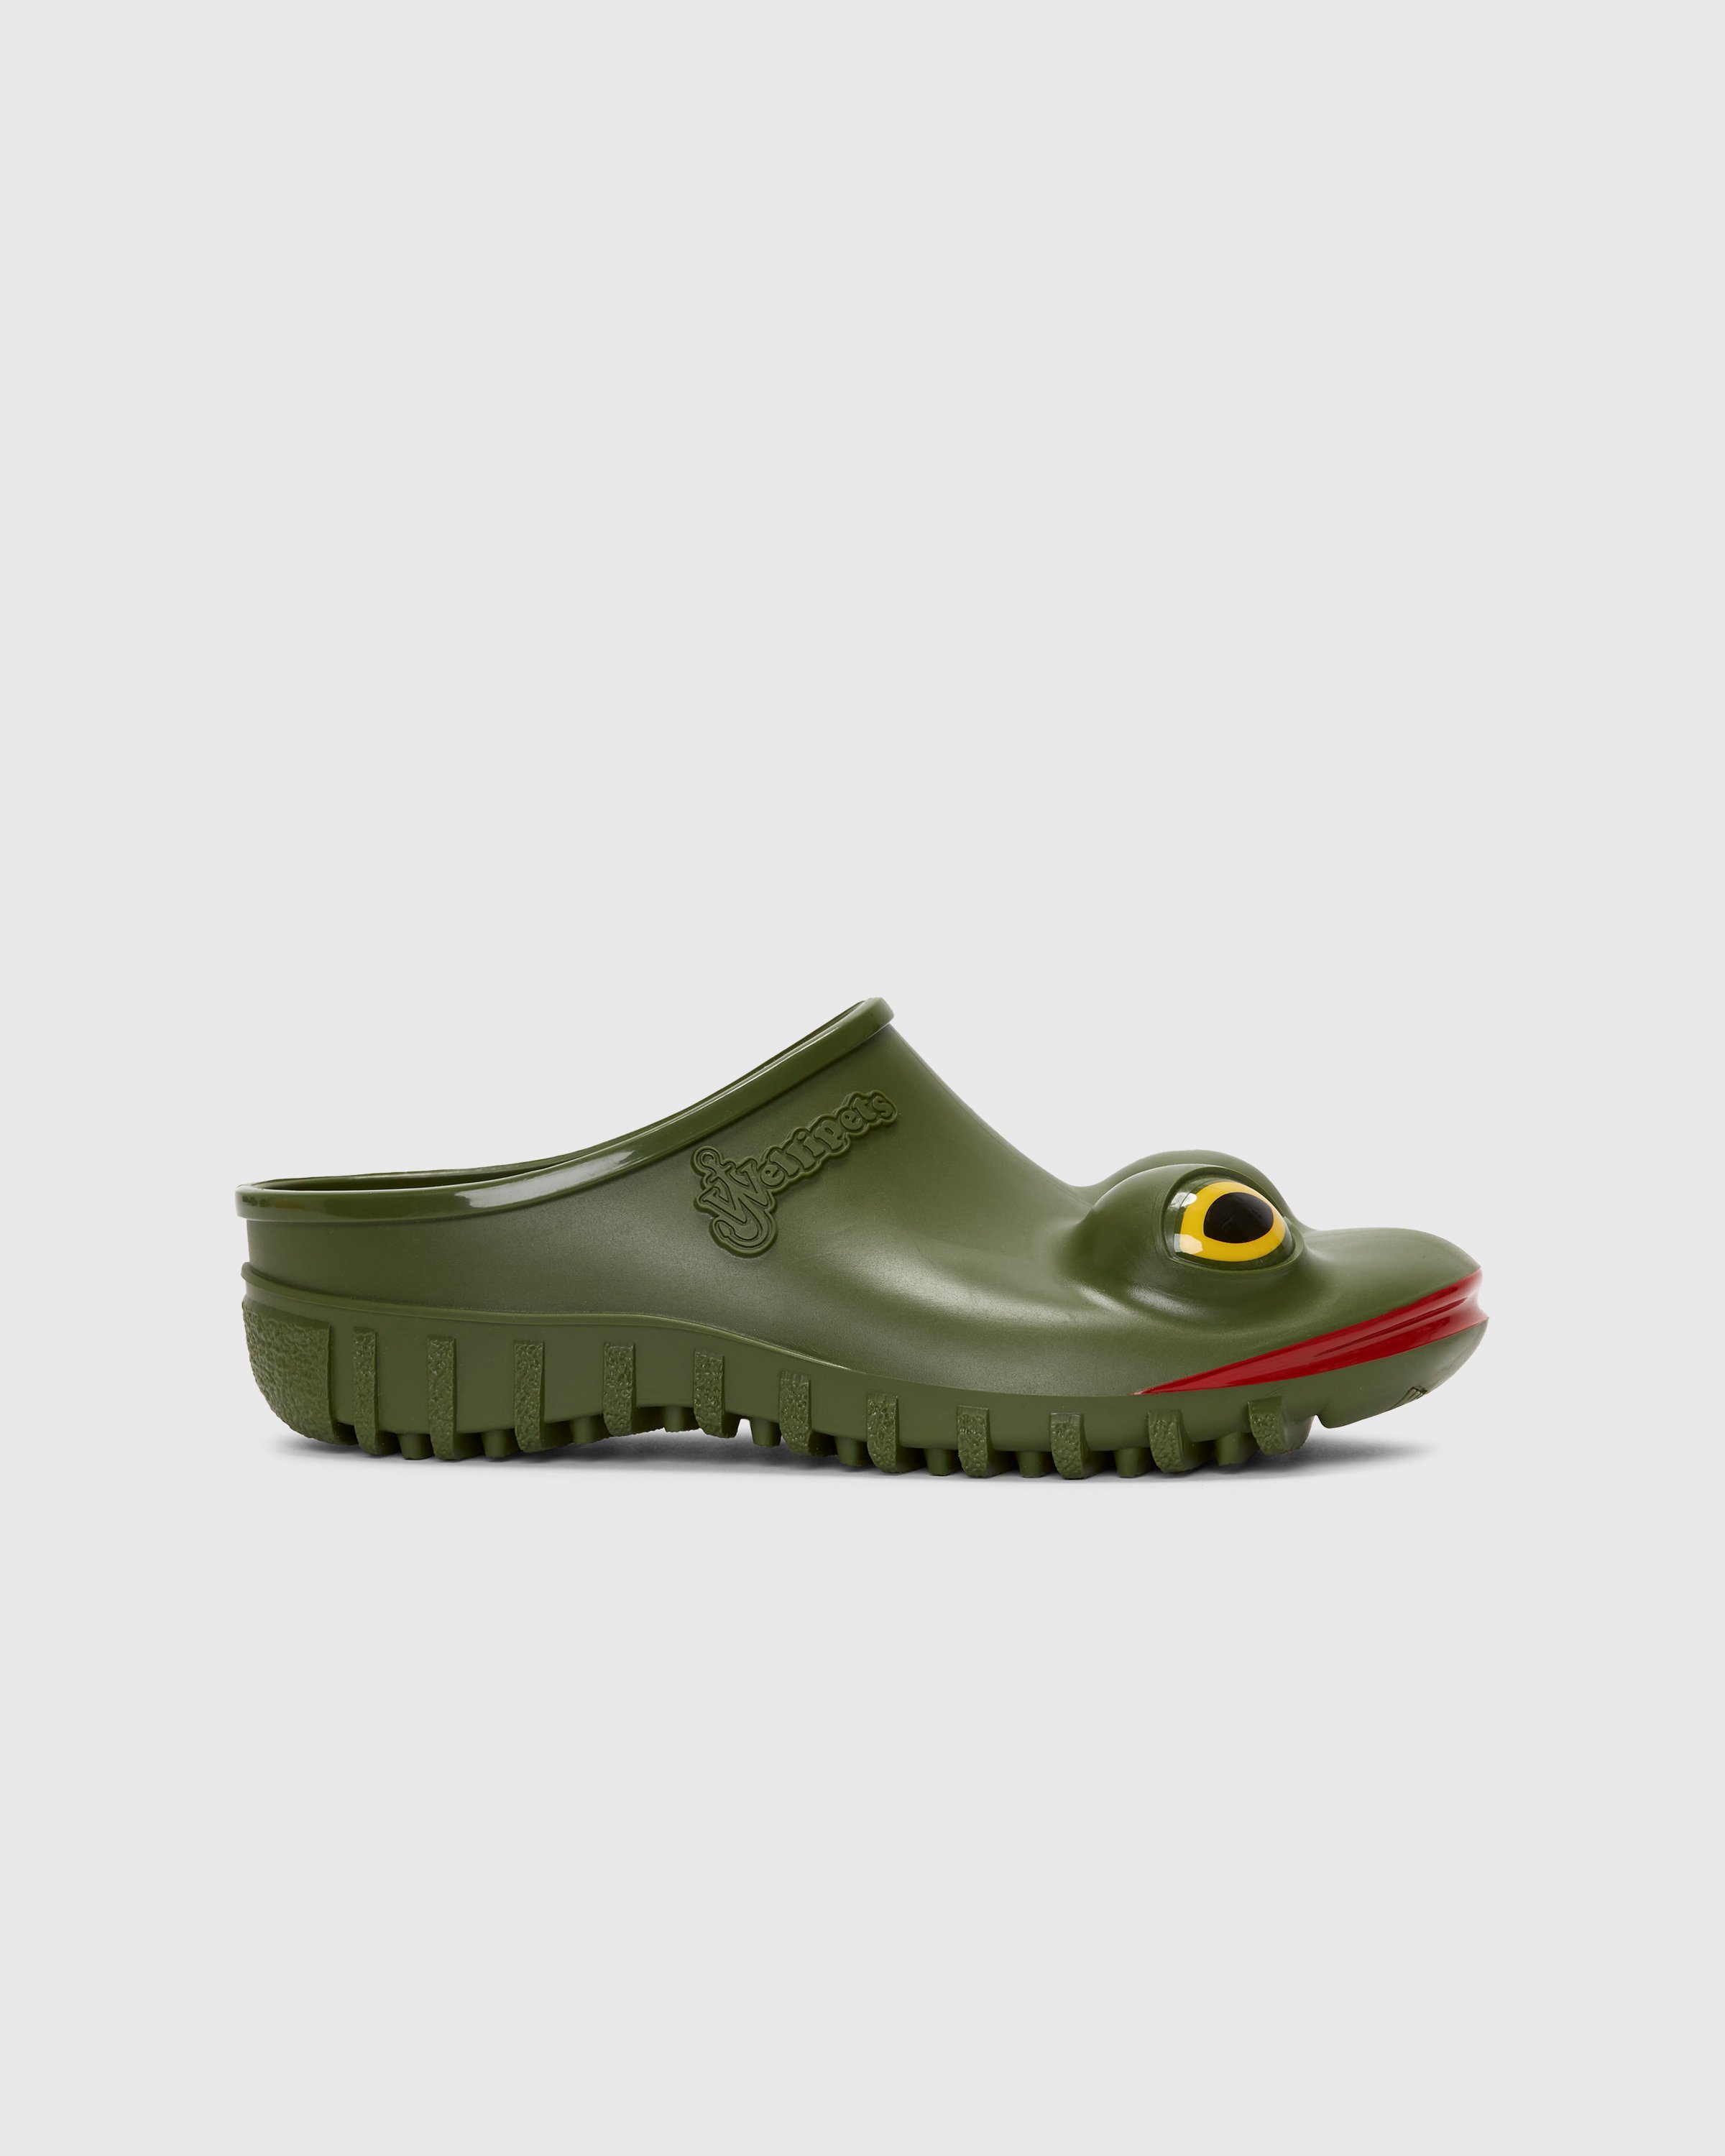 J.W. Anderson x Wellipets - Frog Loafer Green - Footwear - Green - Image 1